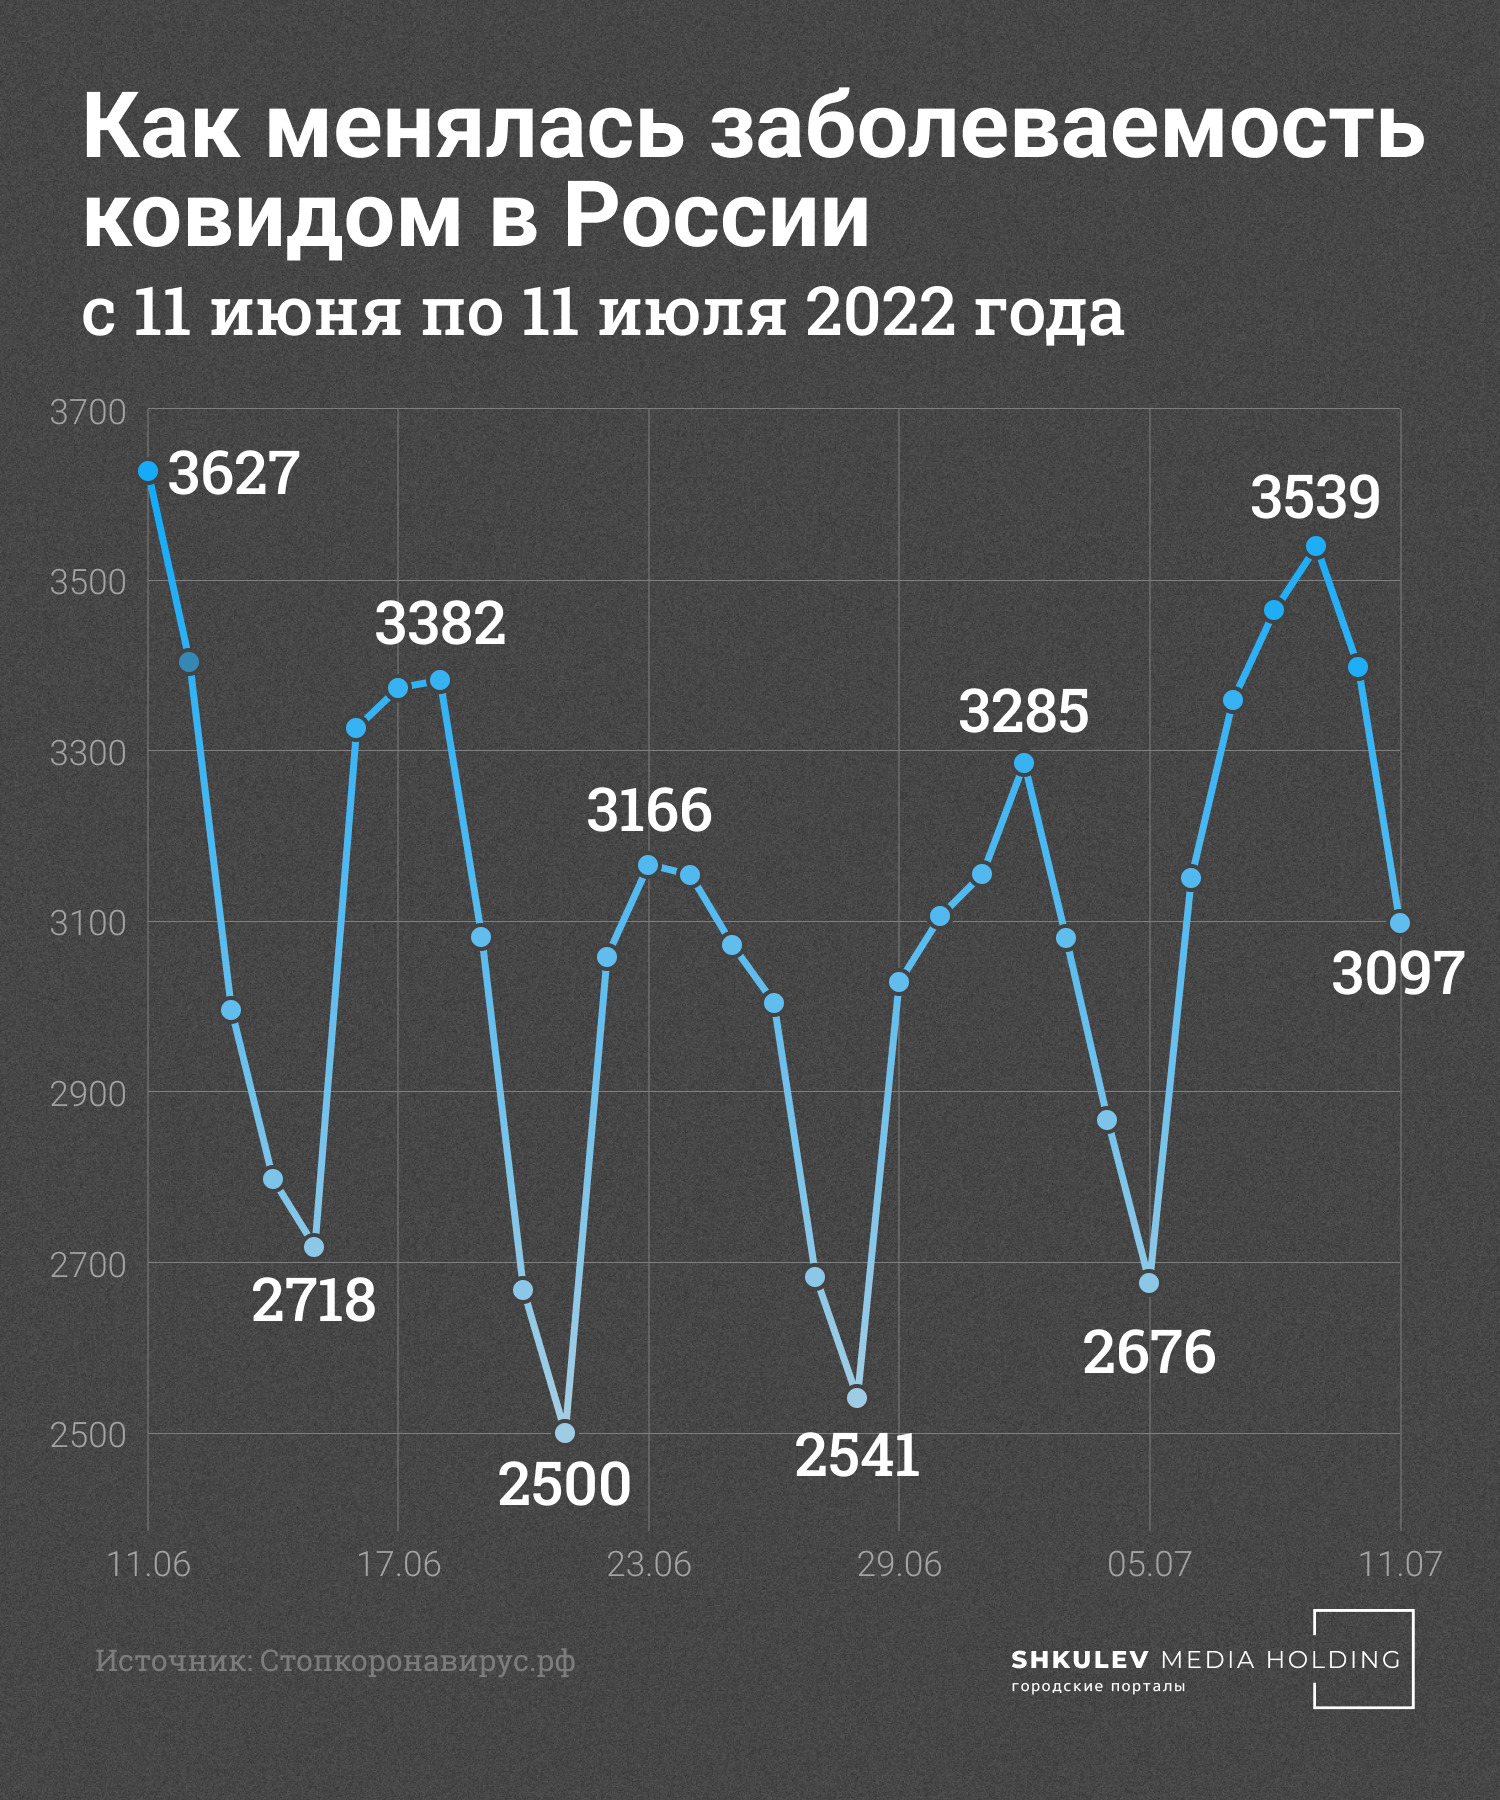 В России график заболеваемости ковидом пока не сильно колеблется